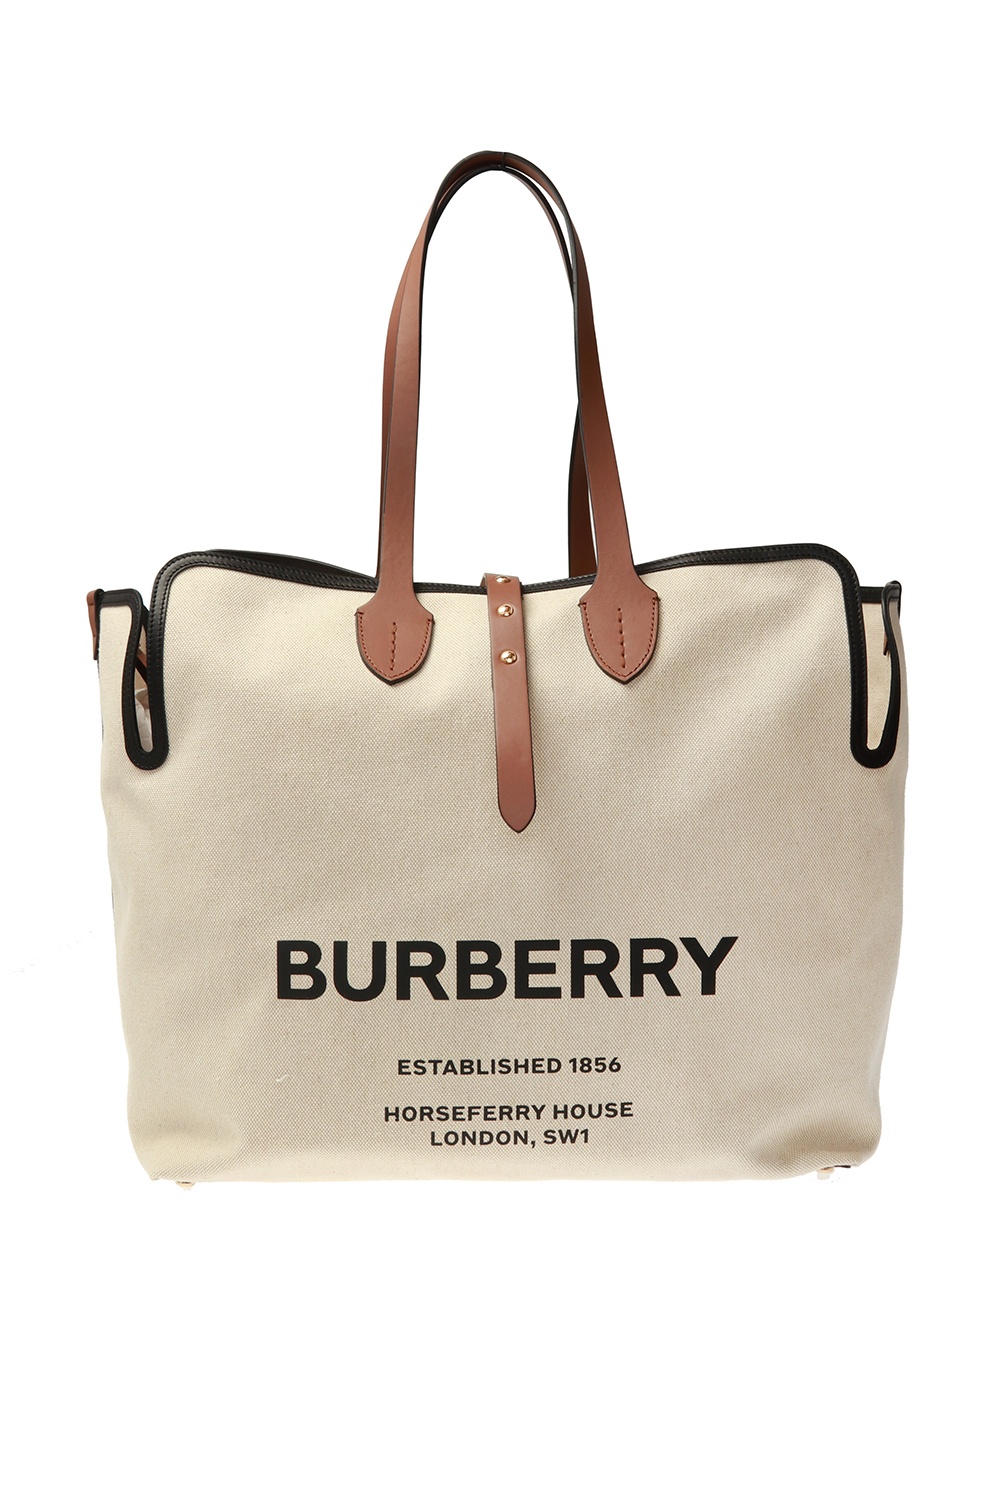 burberry shopper bag